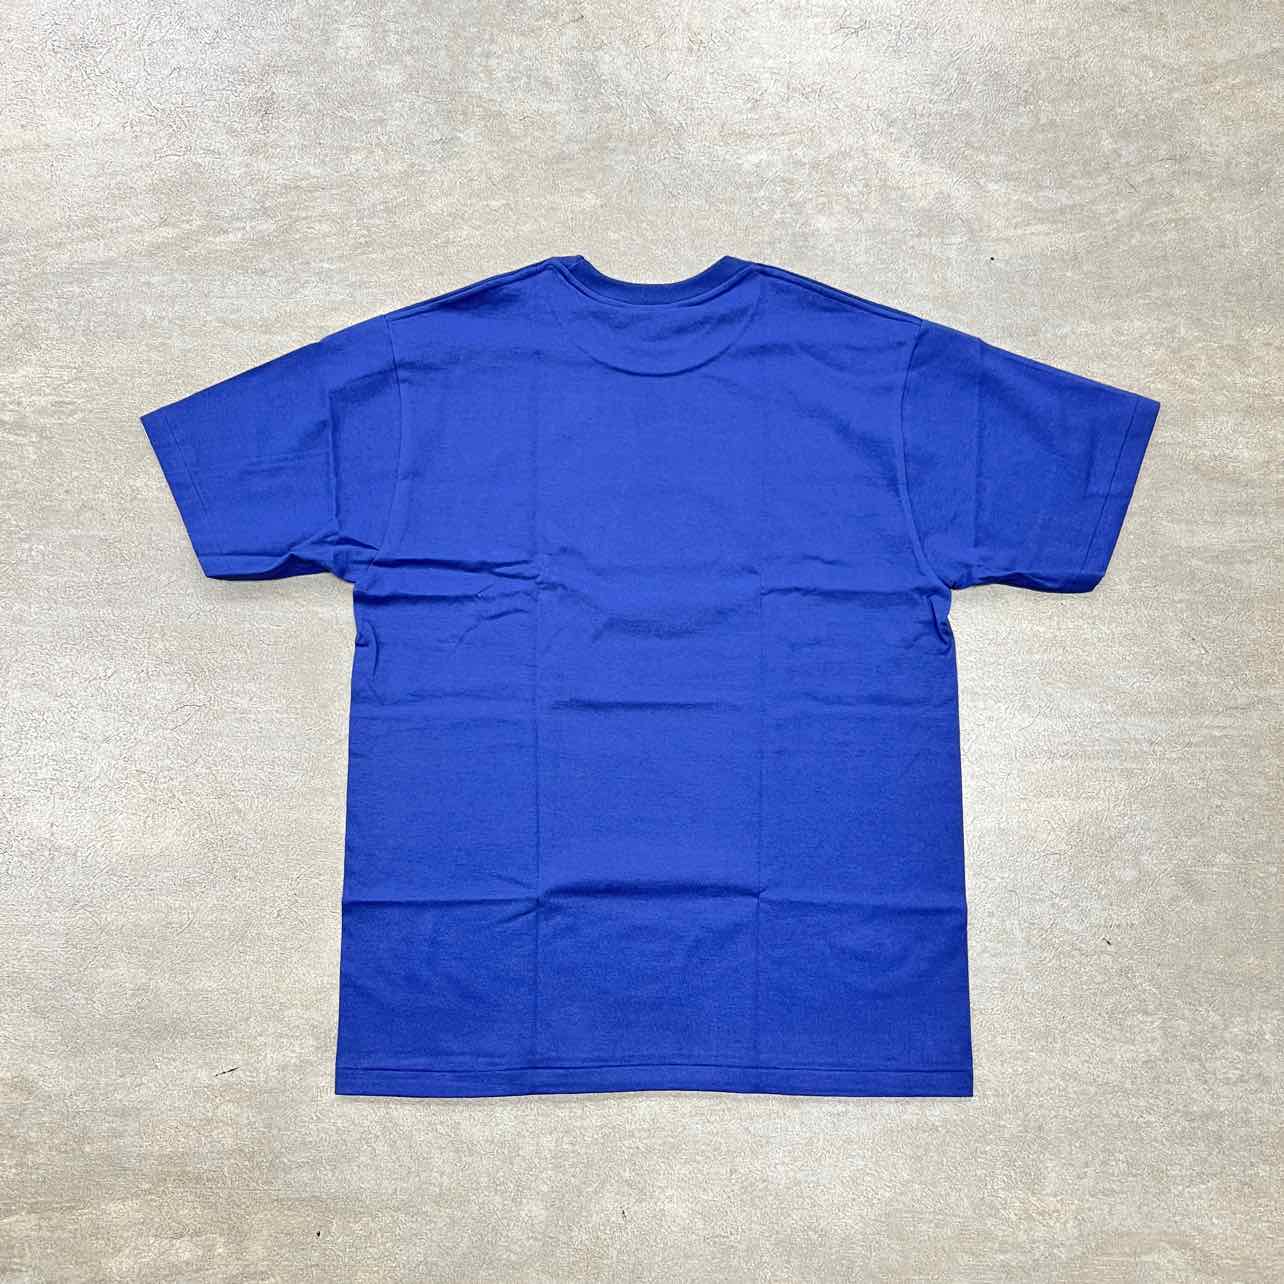 Bape T-Shirt &quot;COLLEGE LOGO&quot; Navy New Size XL